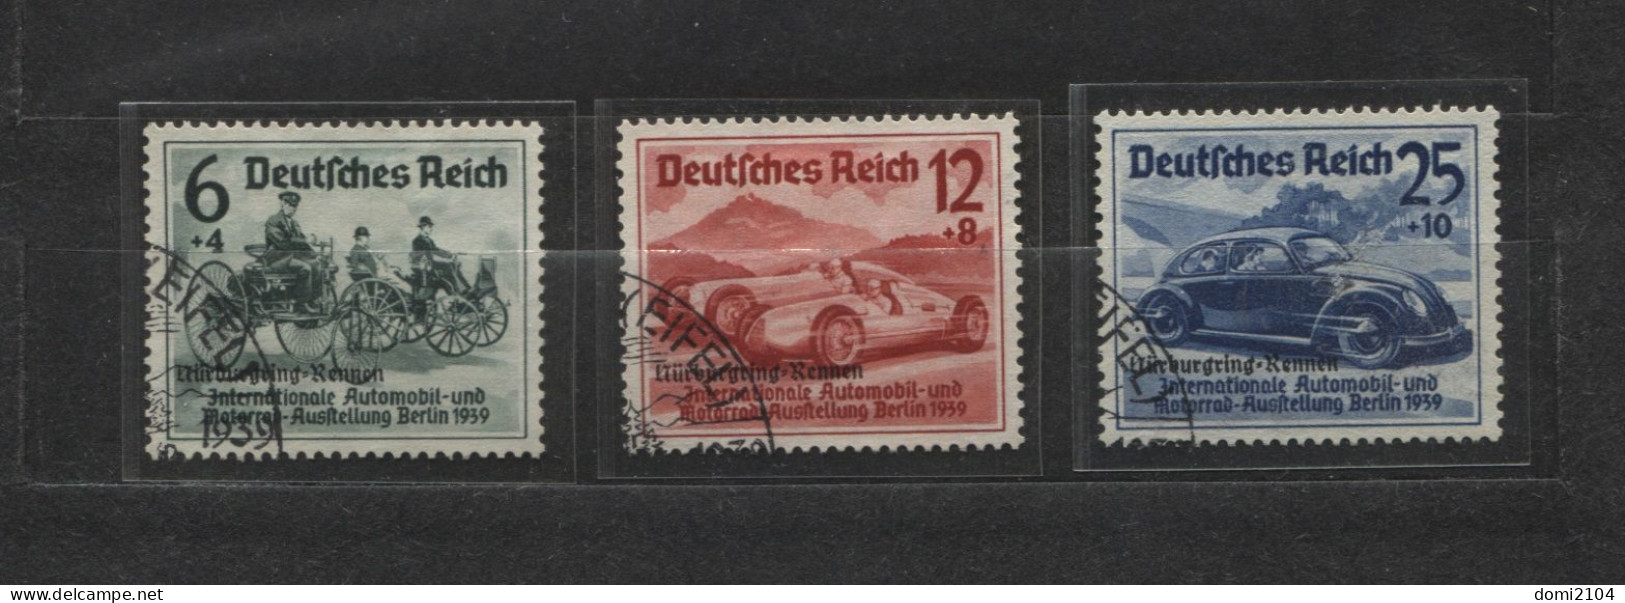 Deutsches Reich # 695-7 Nürburgring-Rennen Überdruckserie Sonderstempel - Neufs